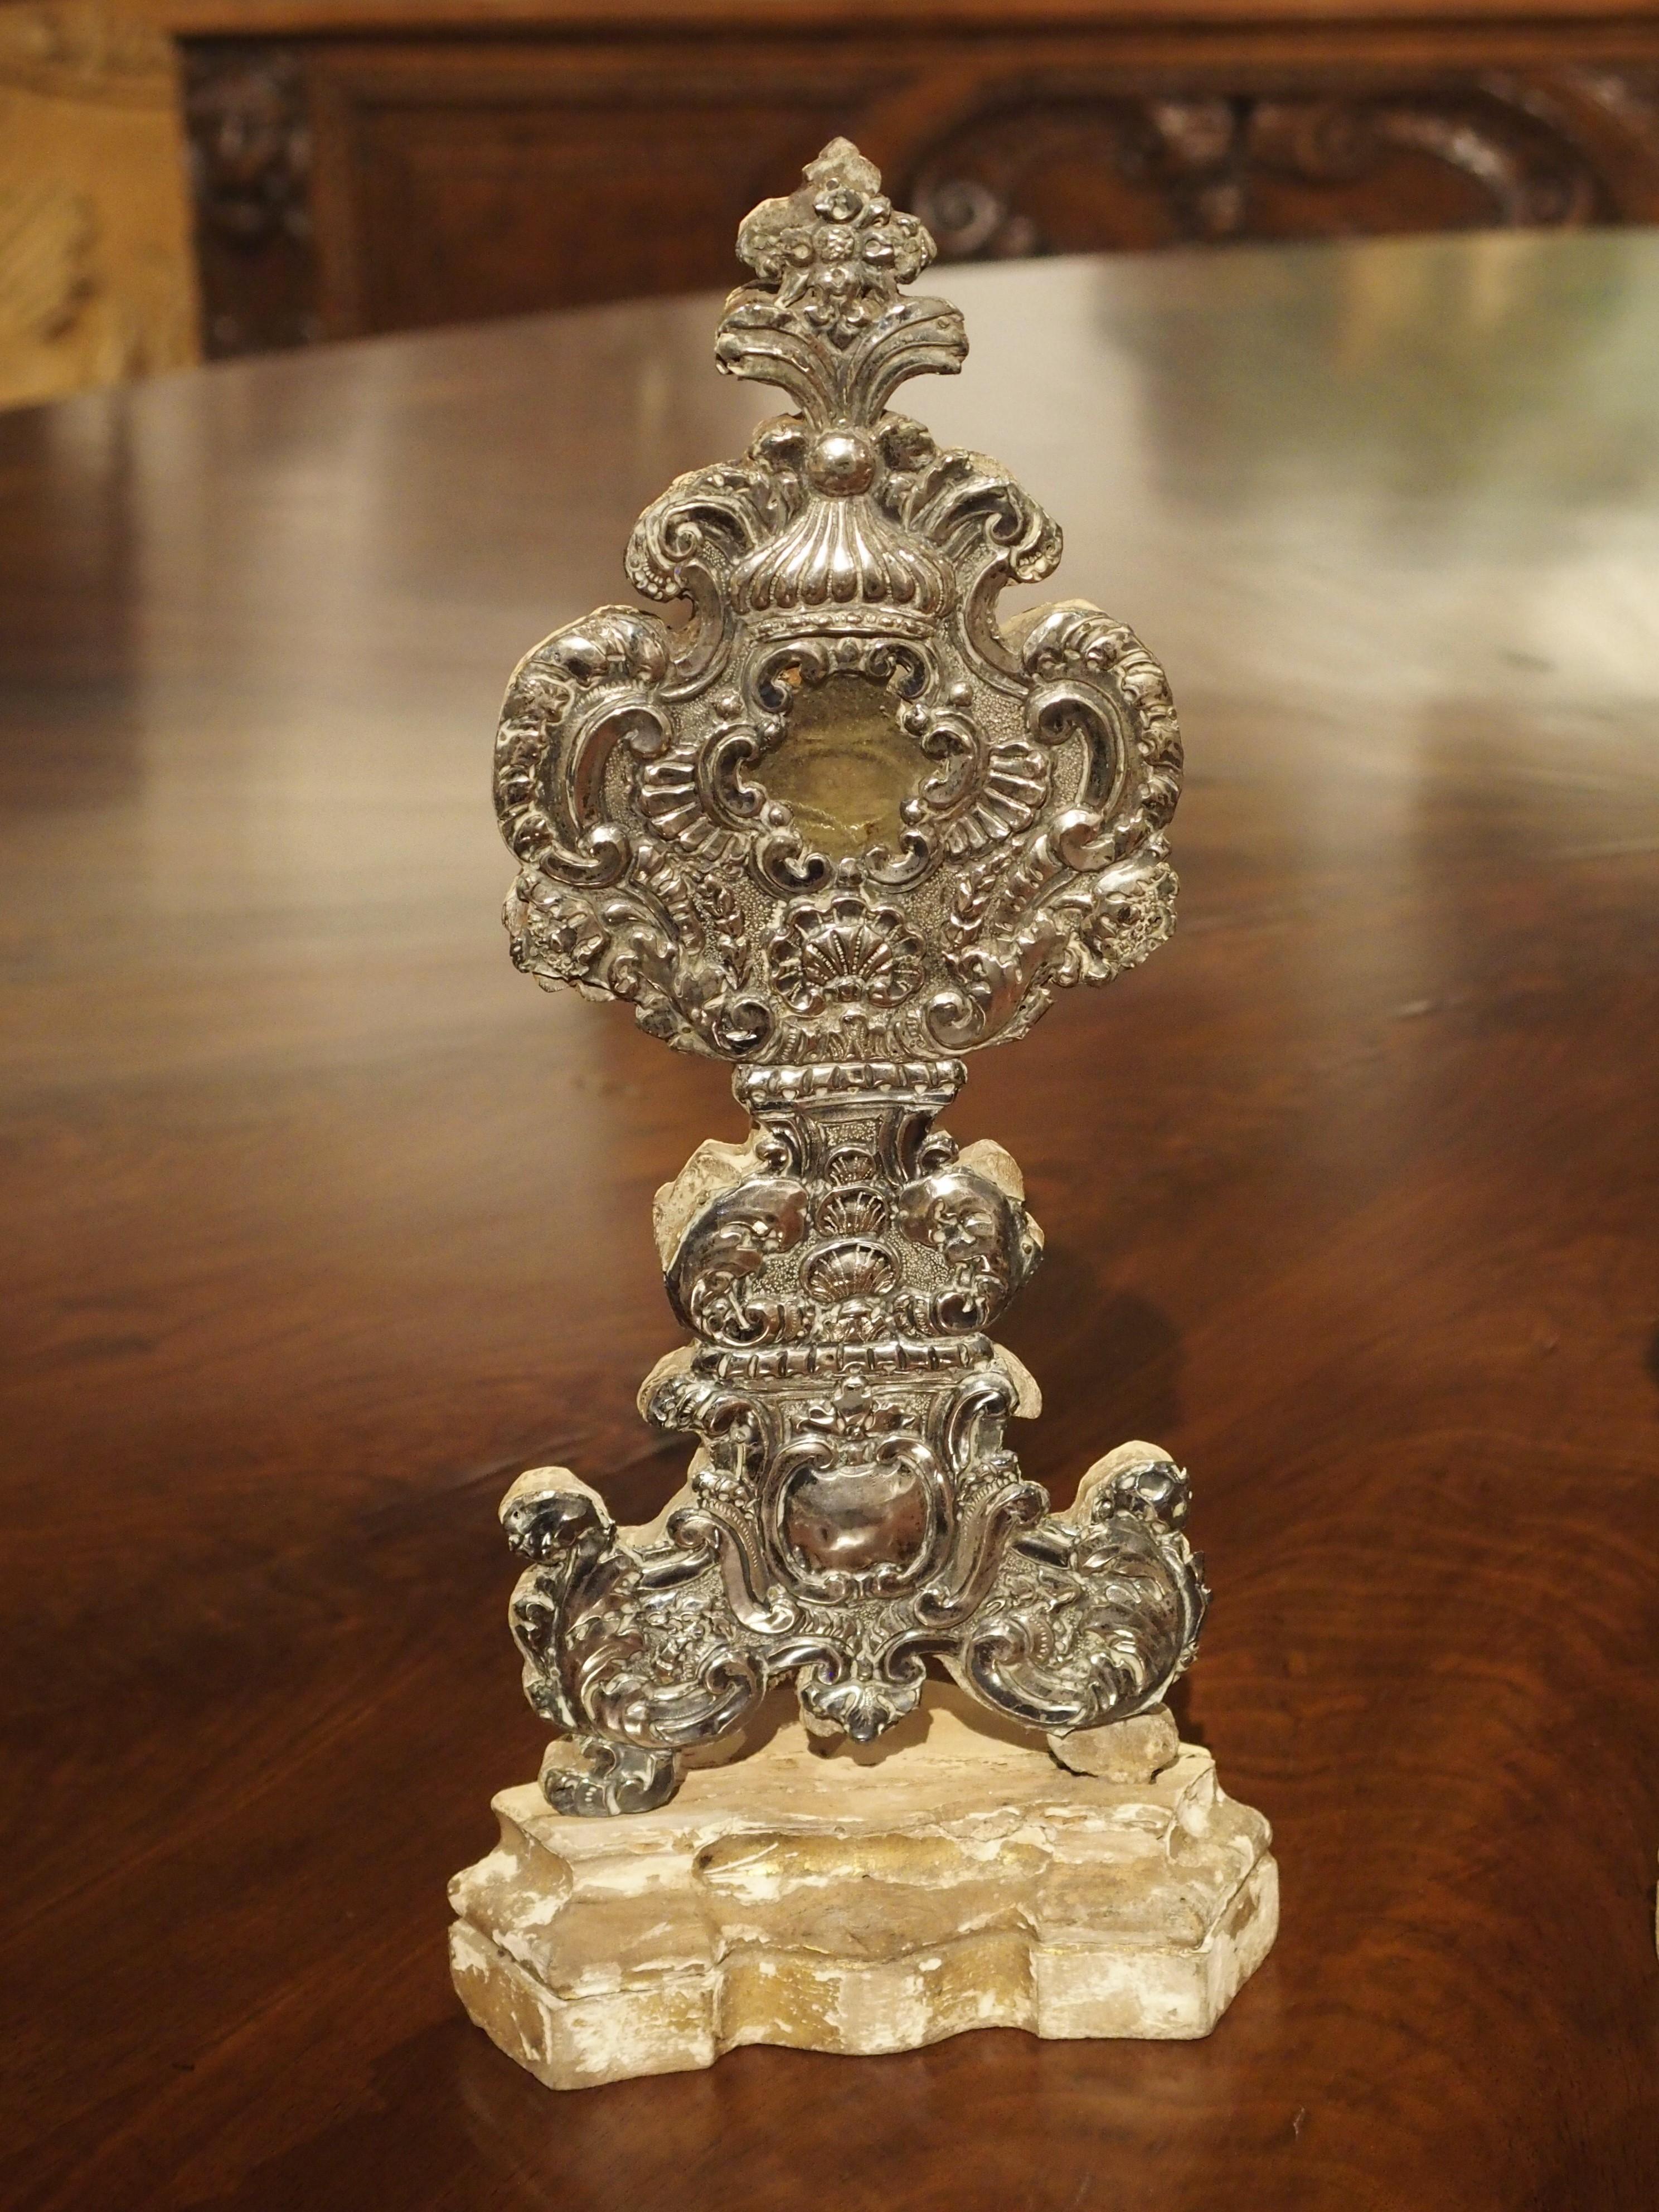 Cette paire de reliquaires en bois argenté provient de France, vers 1750. Les dos sont encore préservés par des sceaux de cire, ce qui indique que les reliques n'ont jamais été enlevées.

Chaque reliquaire comporte une pièce d'argent gravée et